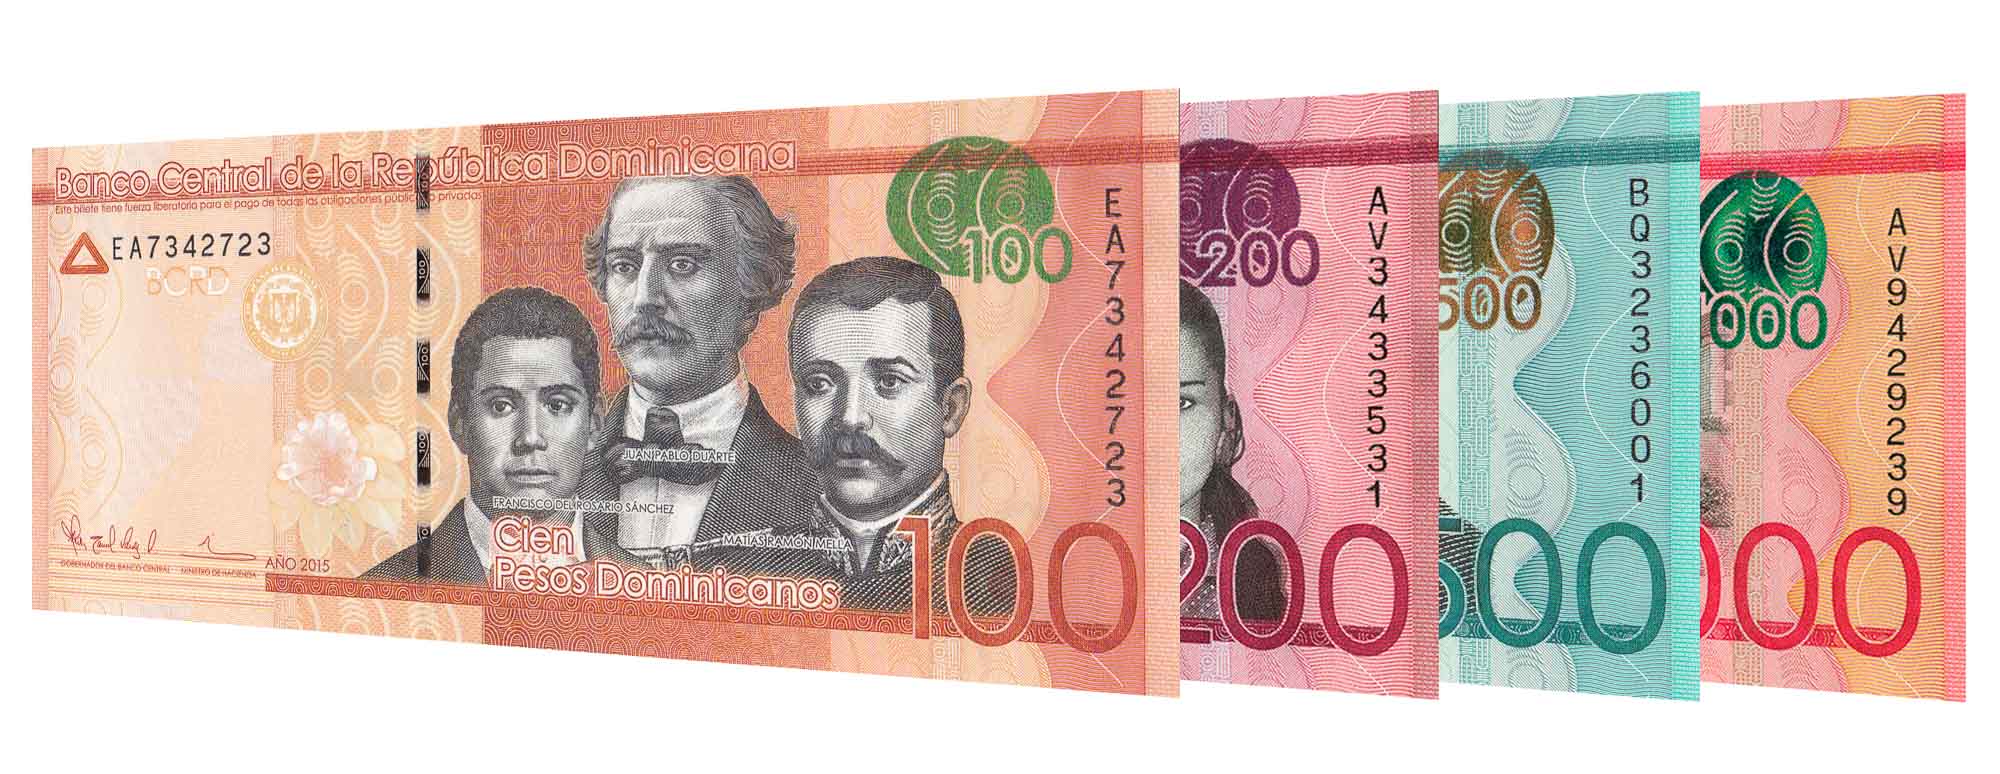 euro to peso dominicano